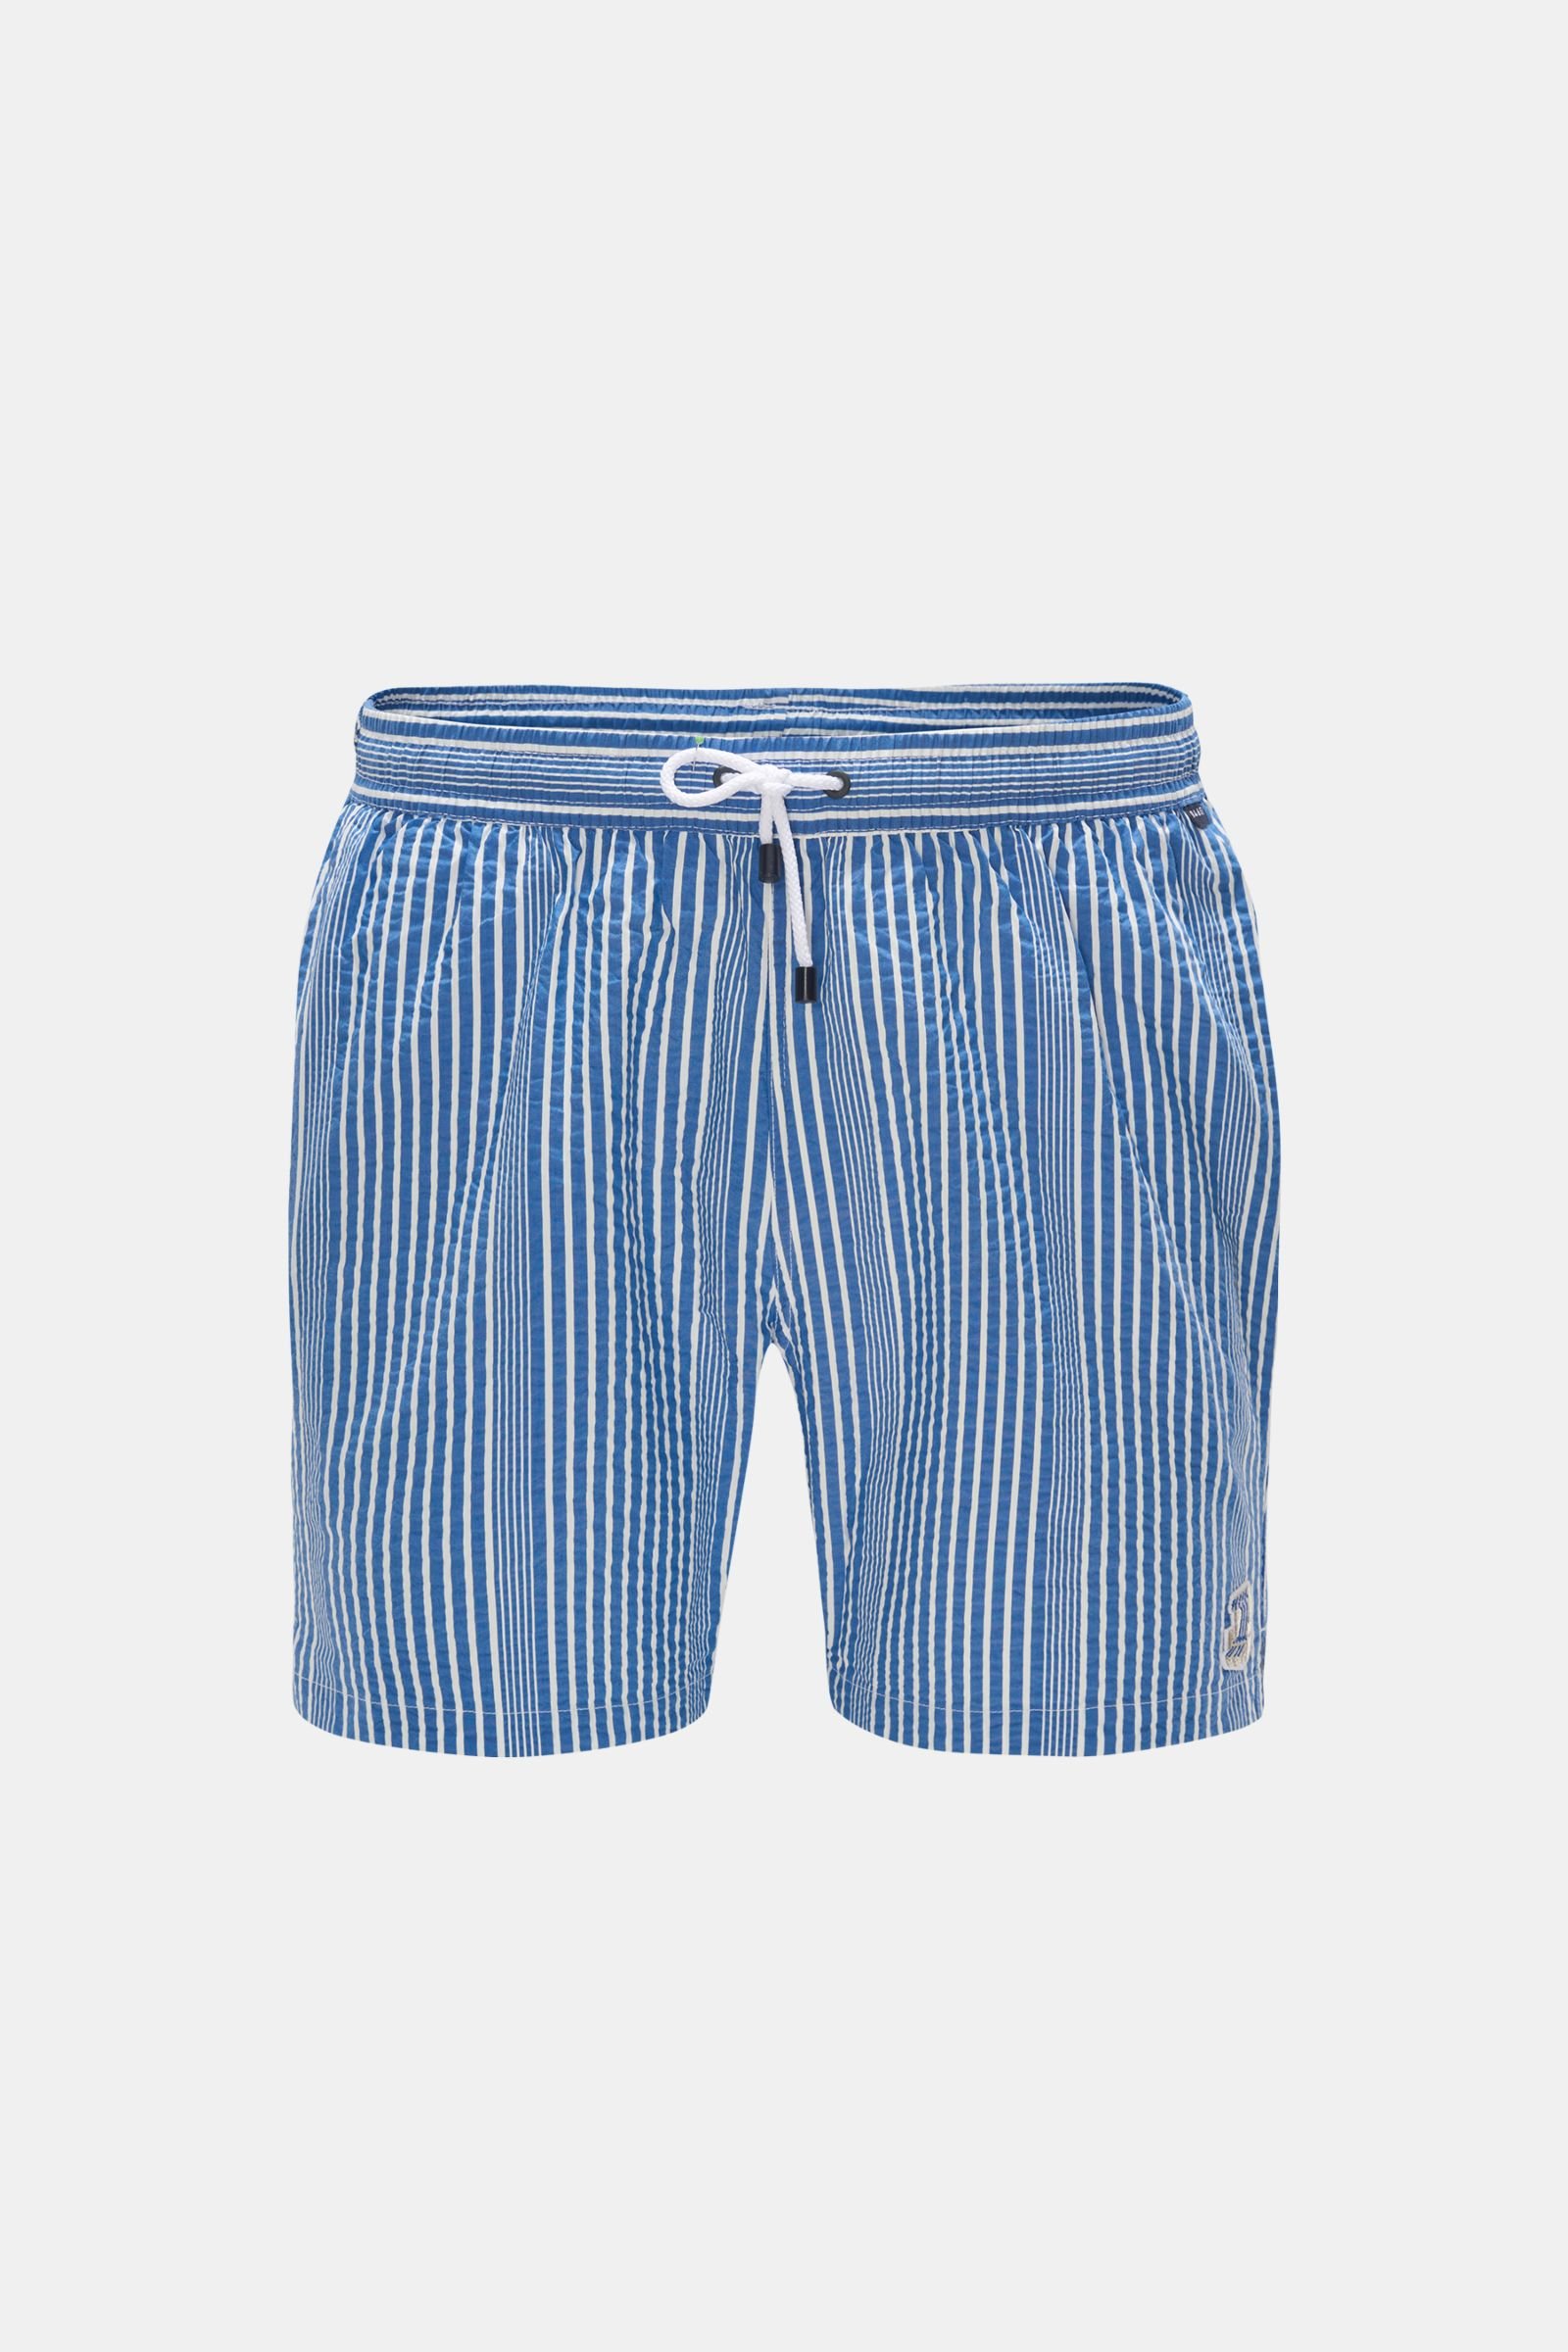 Seersucker swim shorts grey-blue/white striped